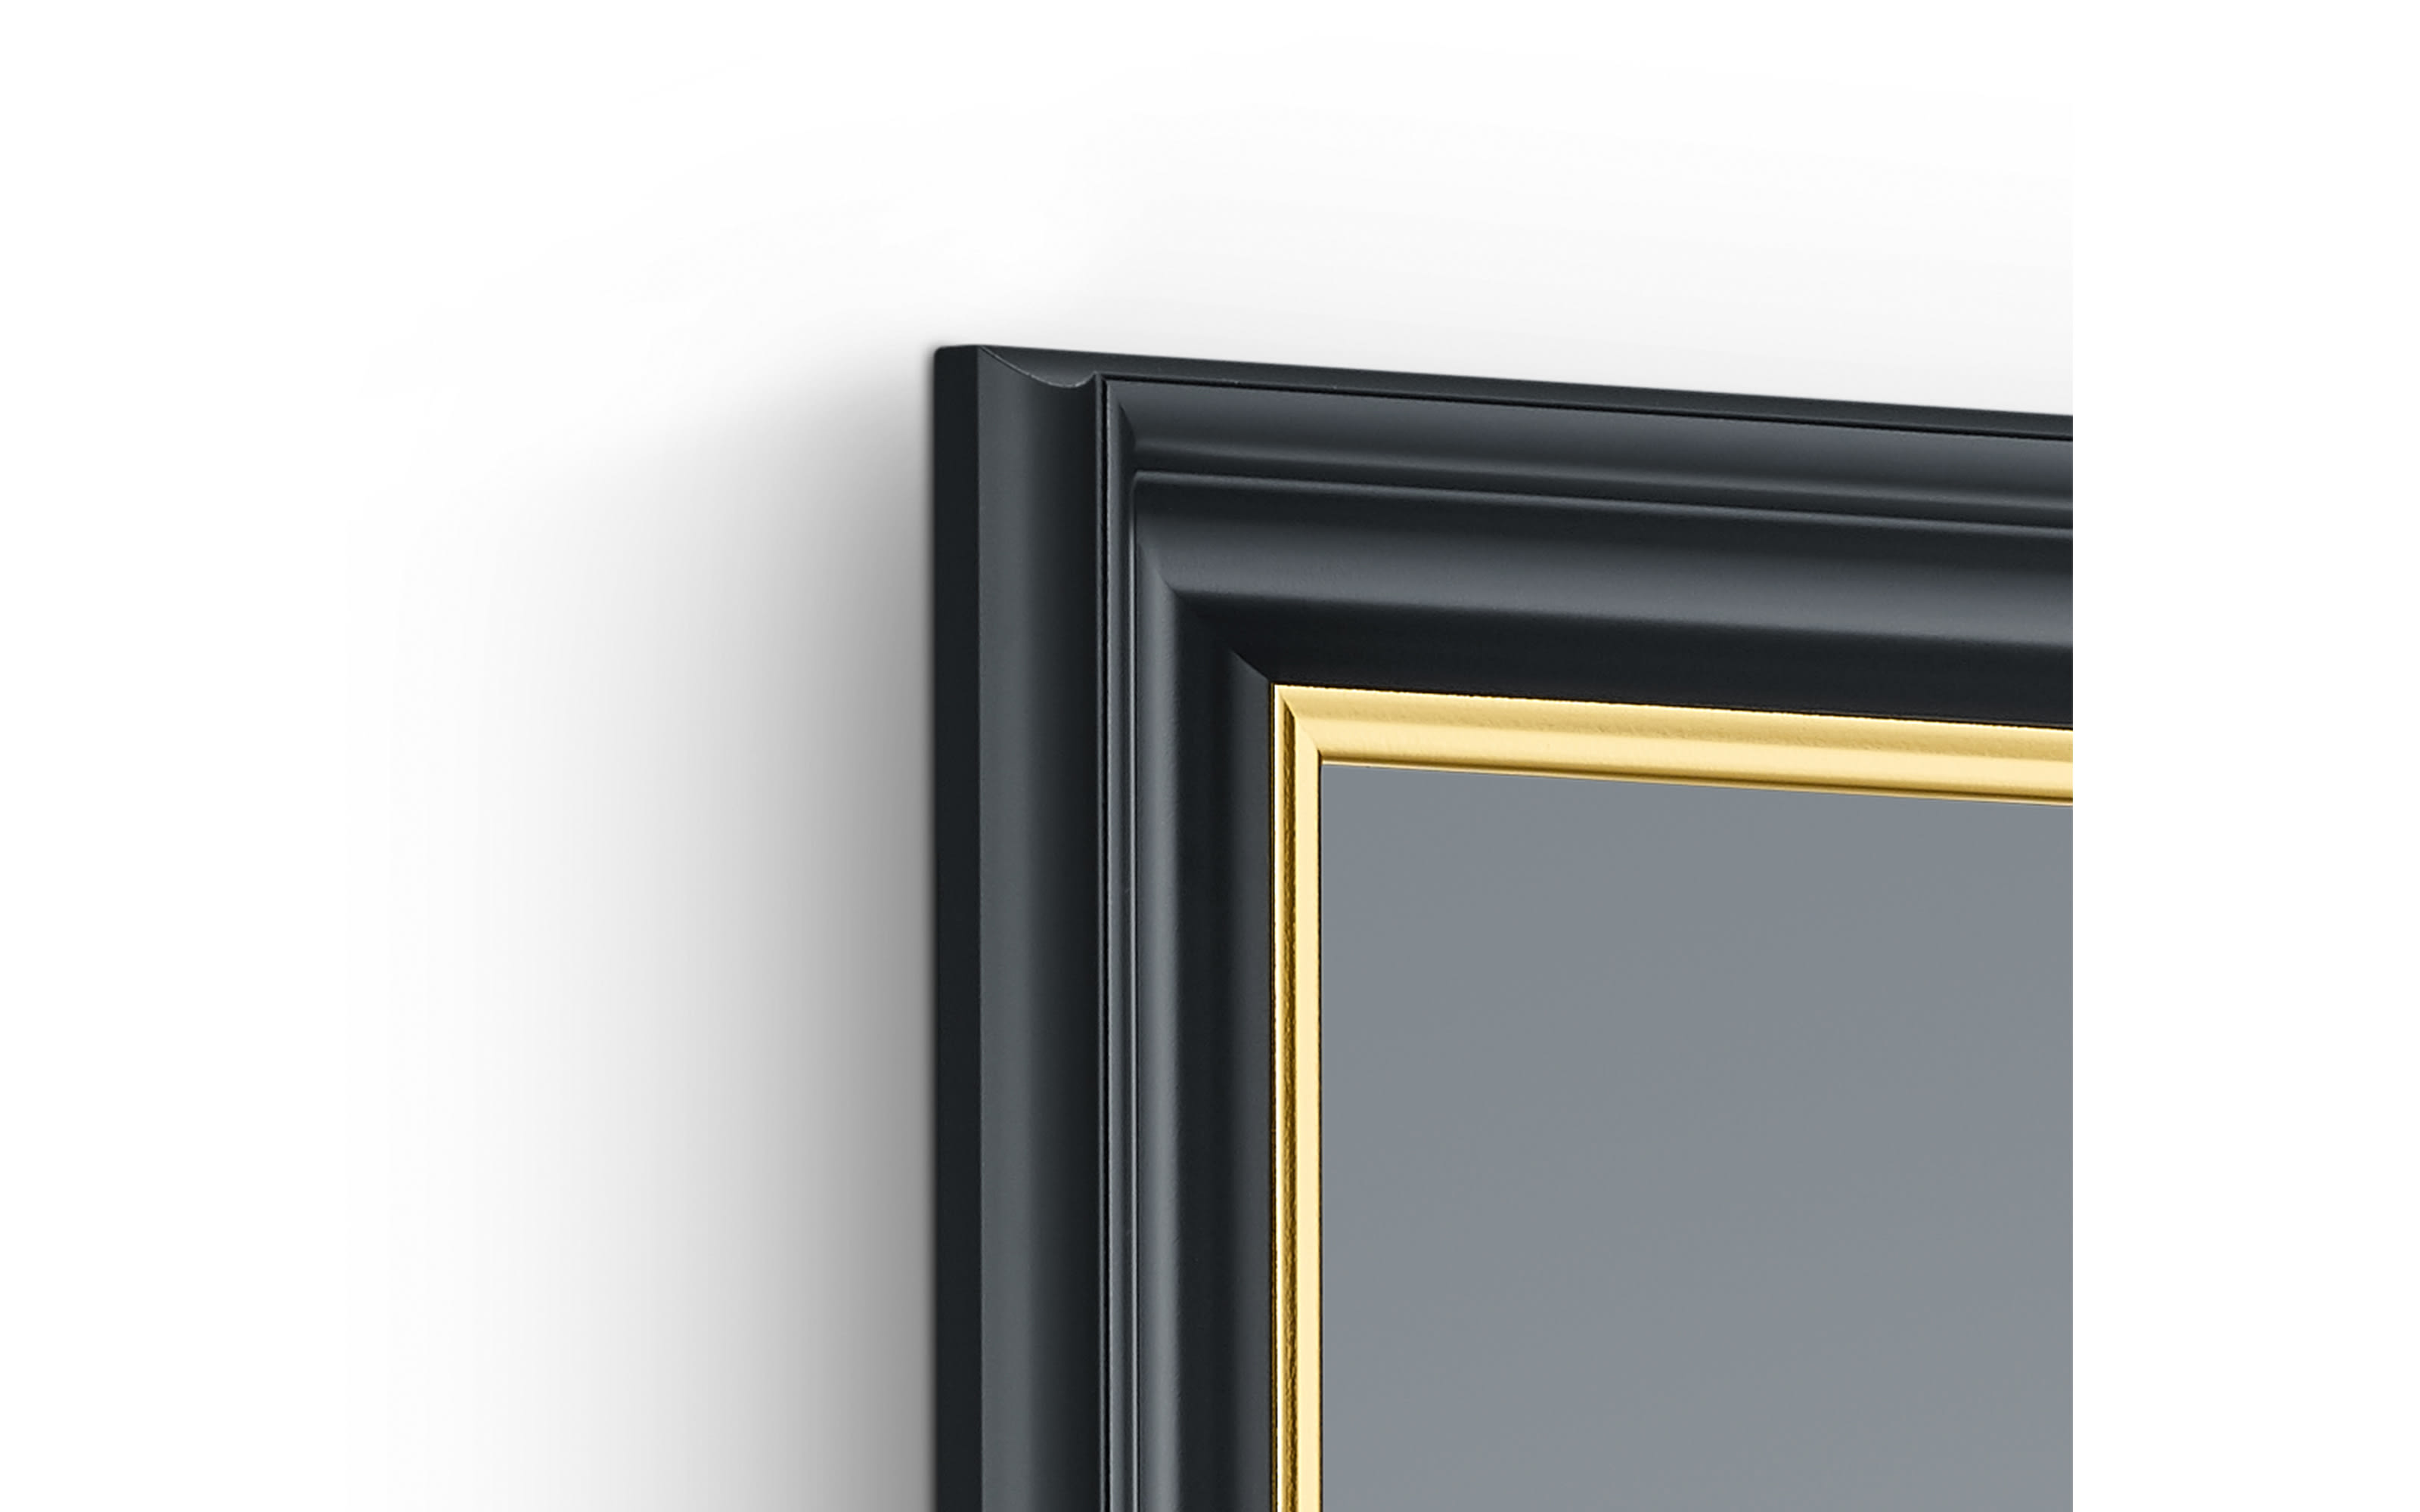 Rahmenspiegel Ina, schwarz/goldfarbig, 50 x 150 cm